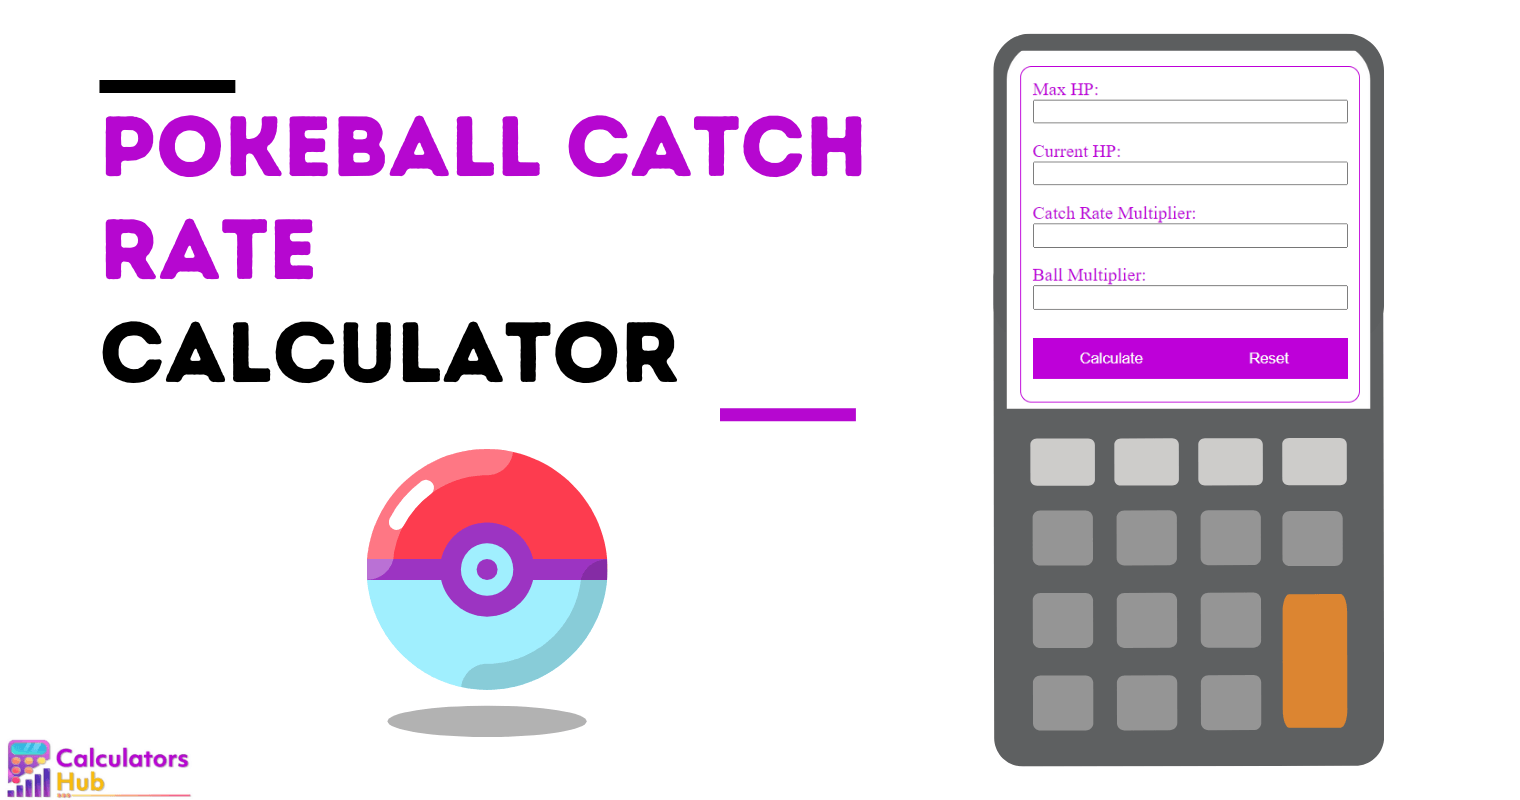 Pokeball Catch Rate Calculator